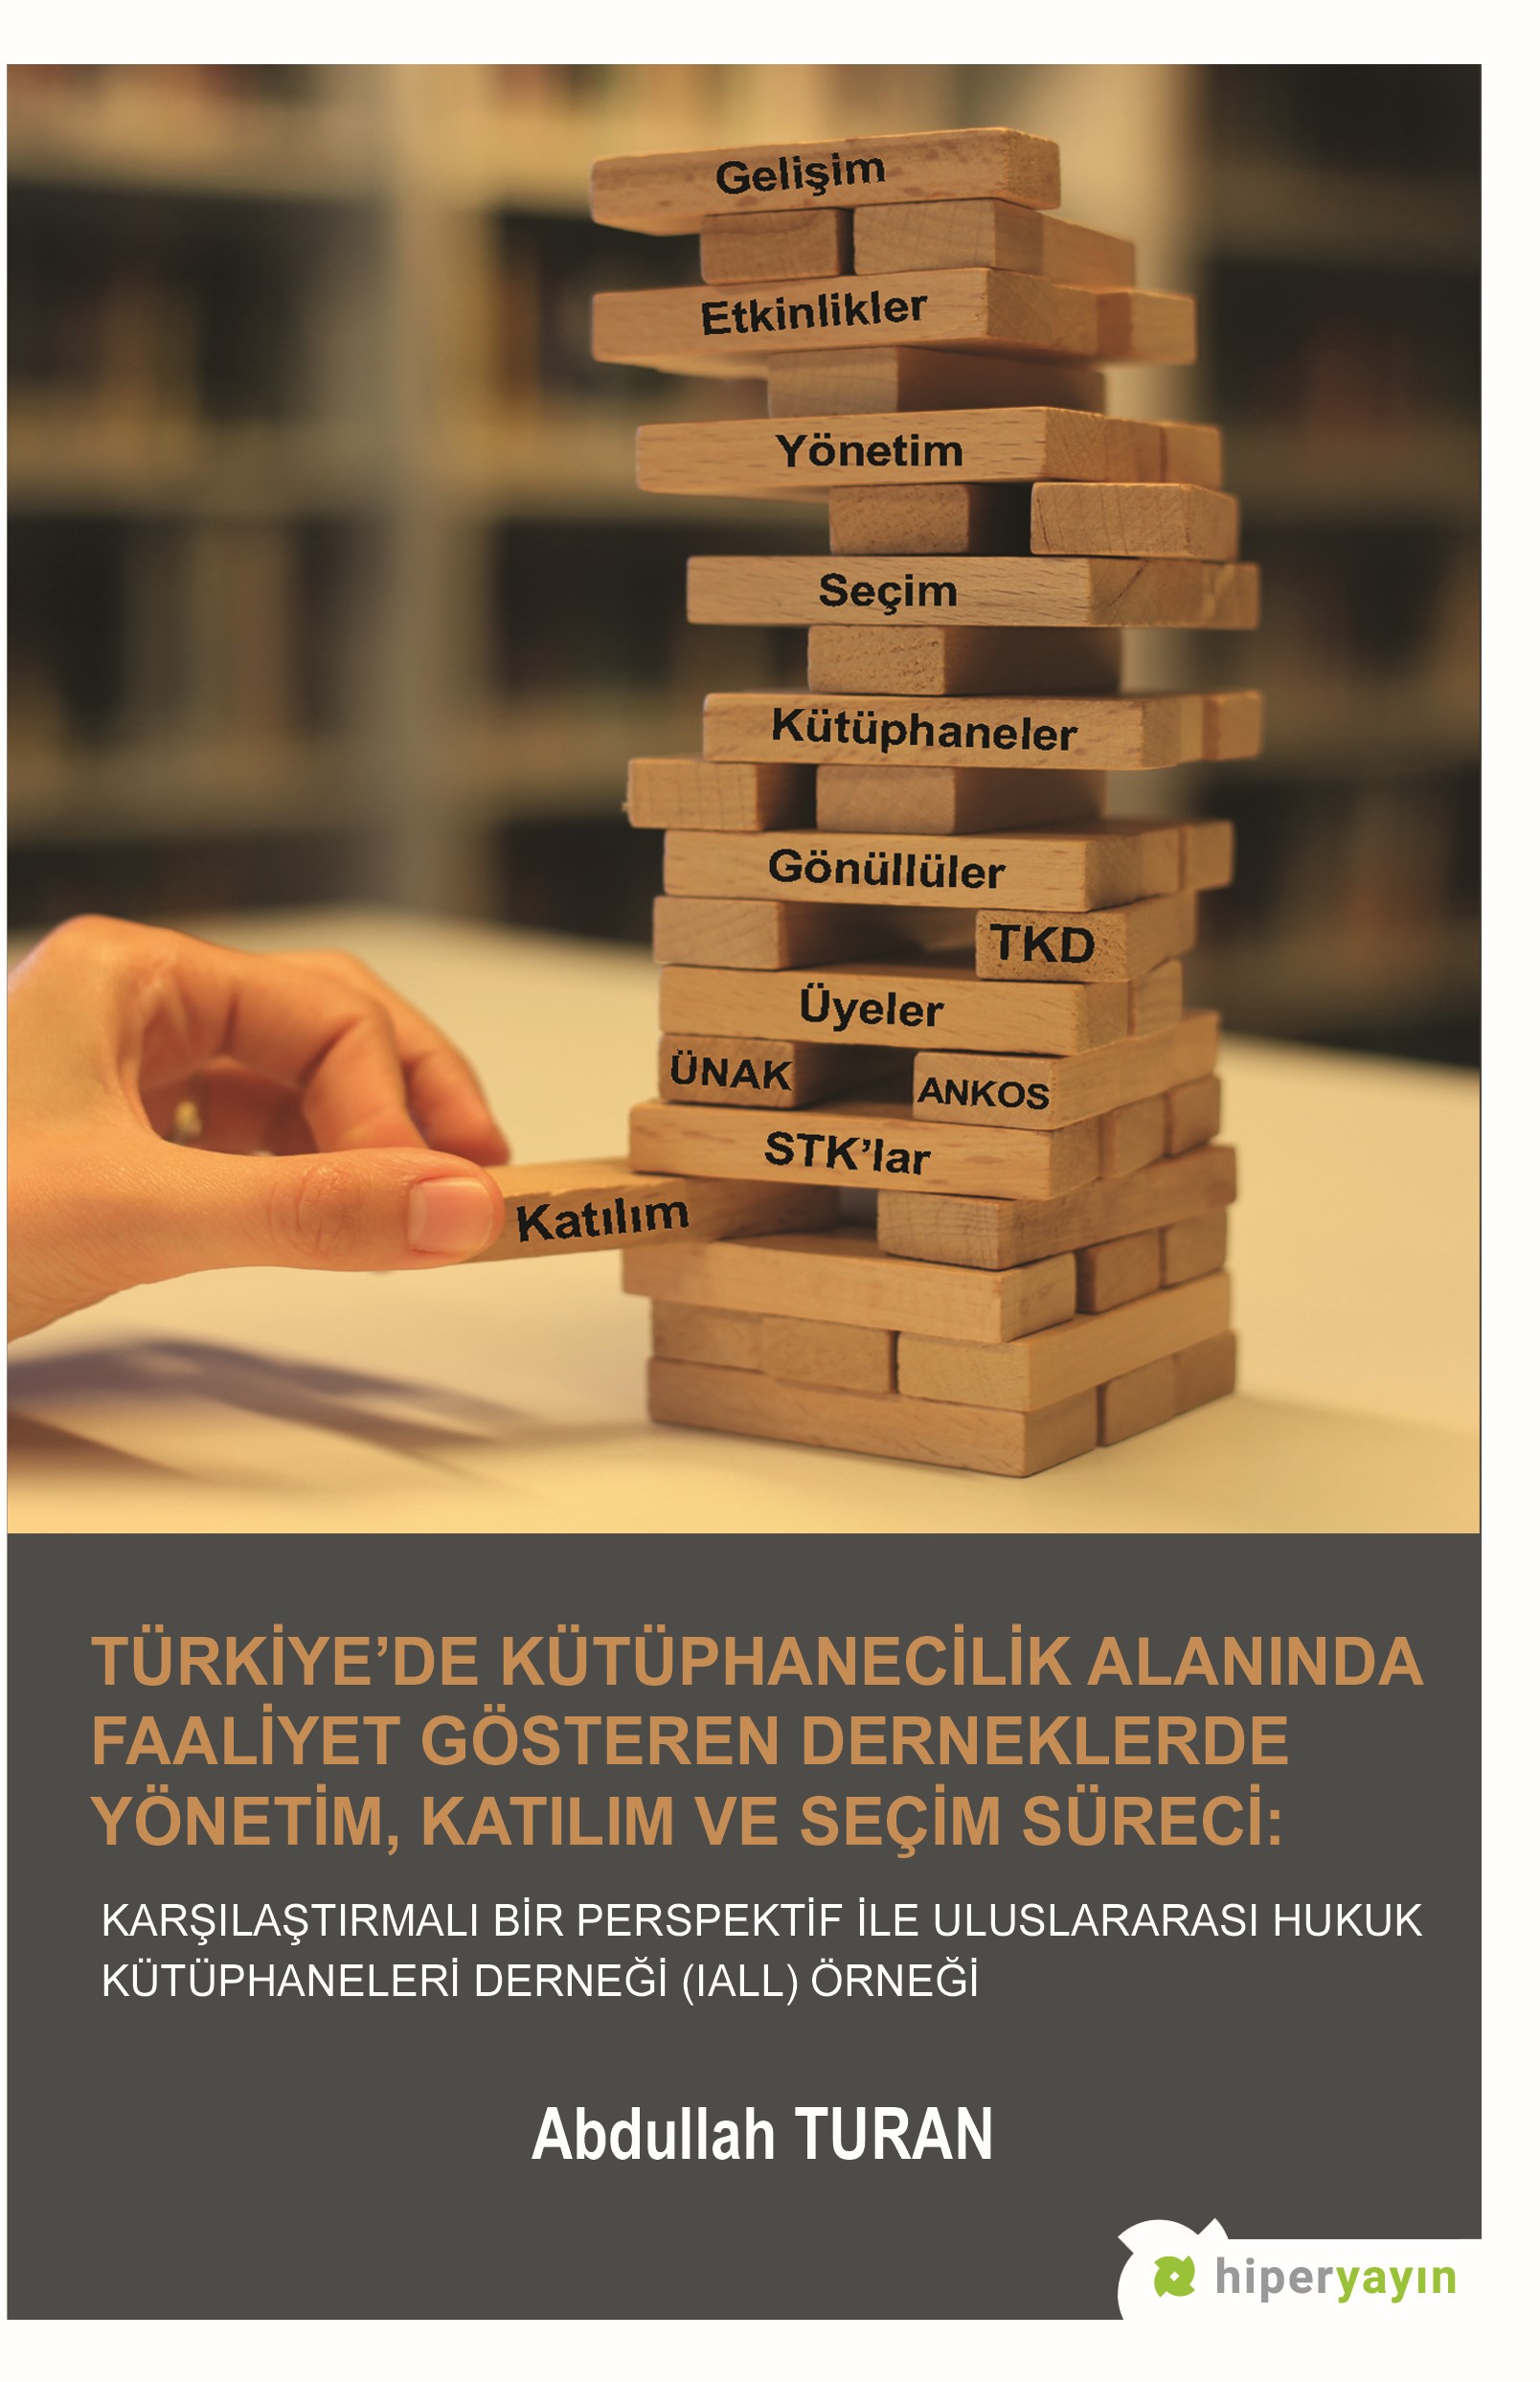 Türkiye’de Kütüphanecilik Alanında Faaliyet Gösteren Derneklerde Yönetim, Katılım ve Seçim Süreci: Karşılaştırmalı Bir Perspektif İle Uluslararası Hukuk Kütüphaneleri Derneği (IALL) Örneği